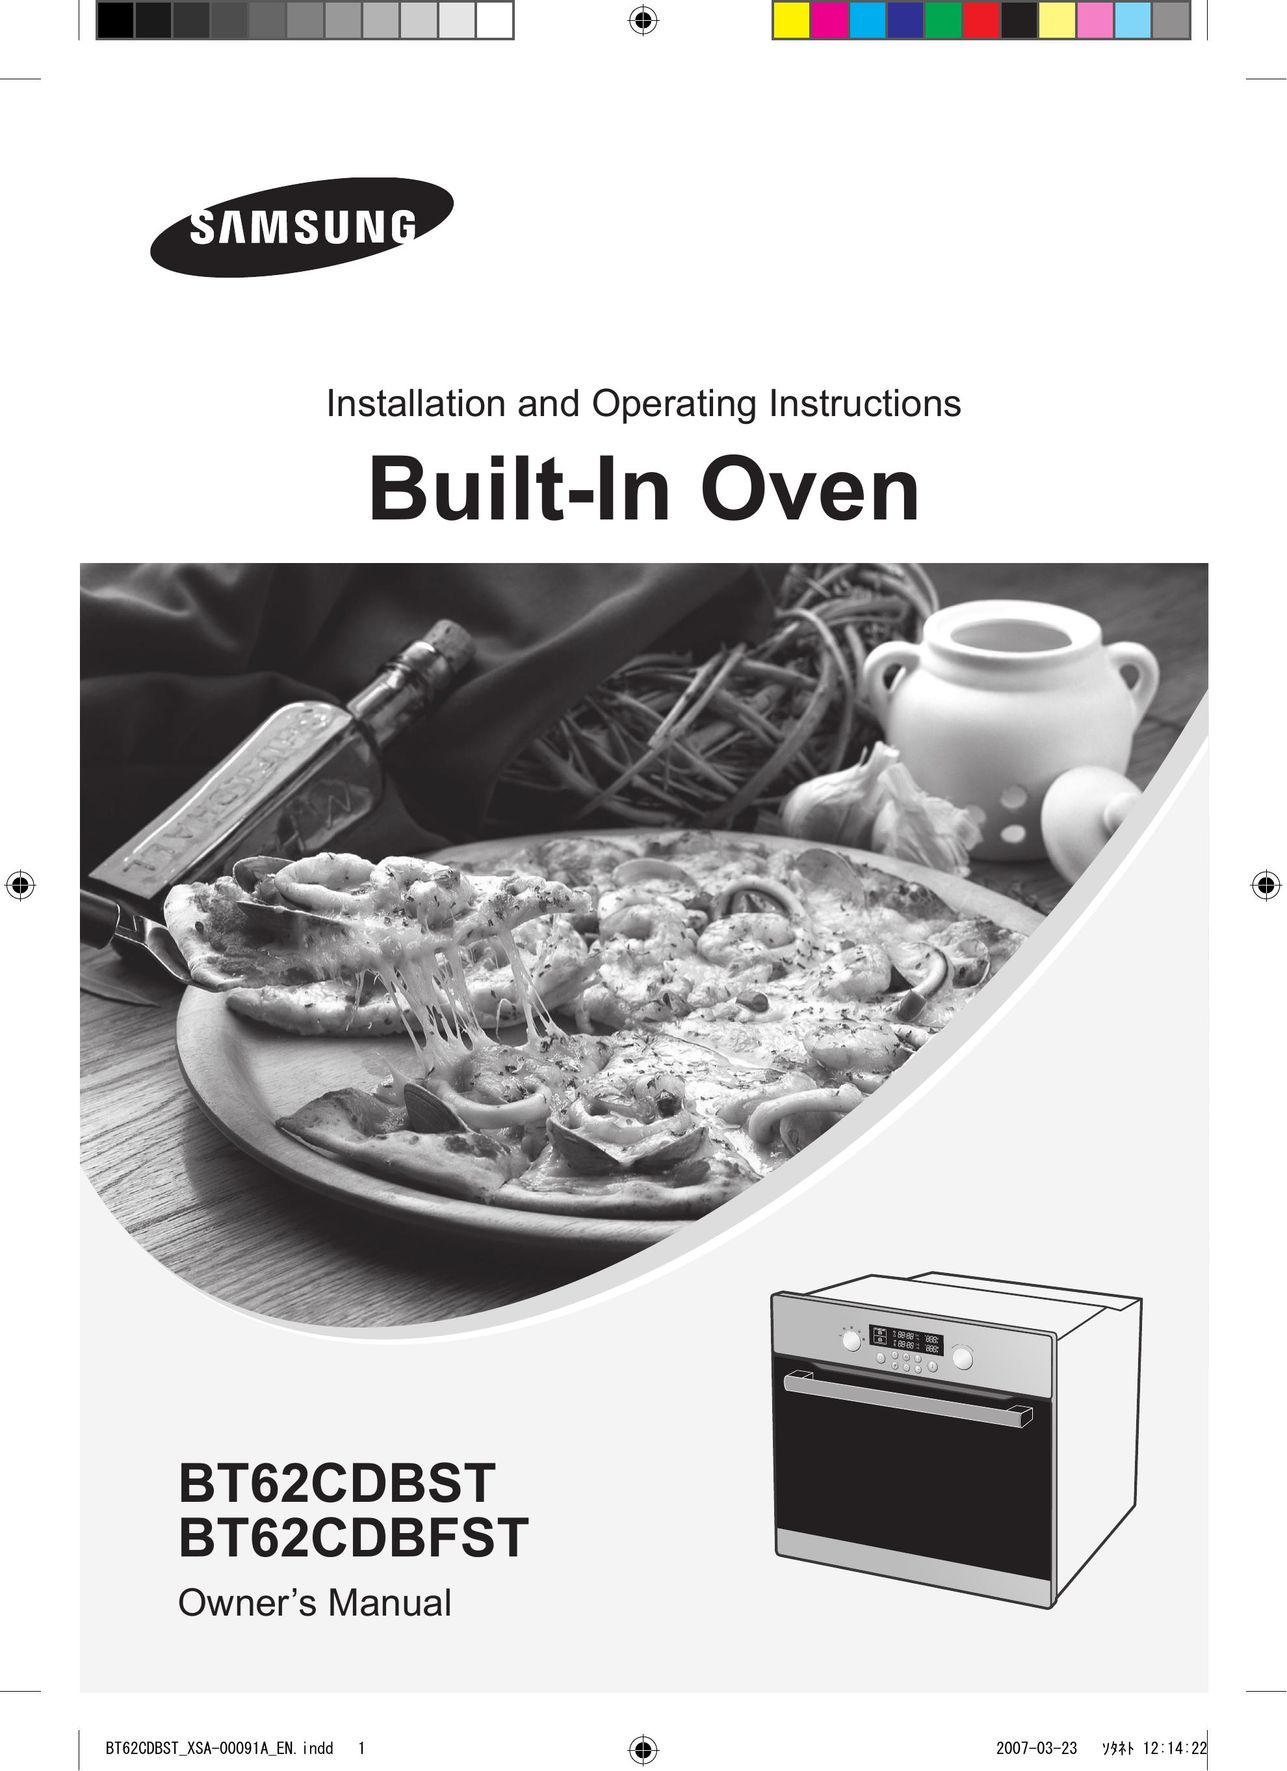 Samsung BT62CDBFST Oven User Manual